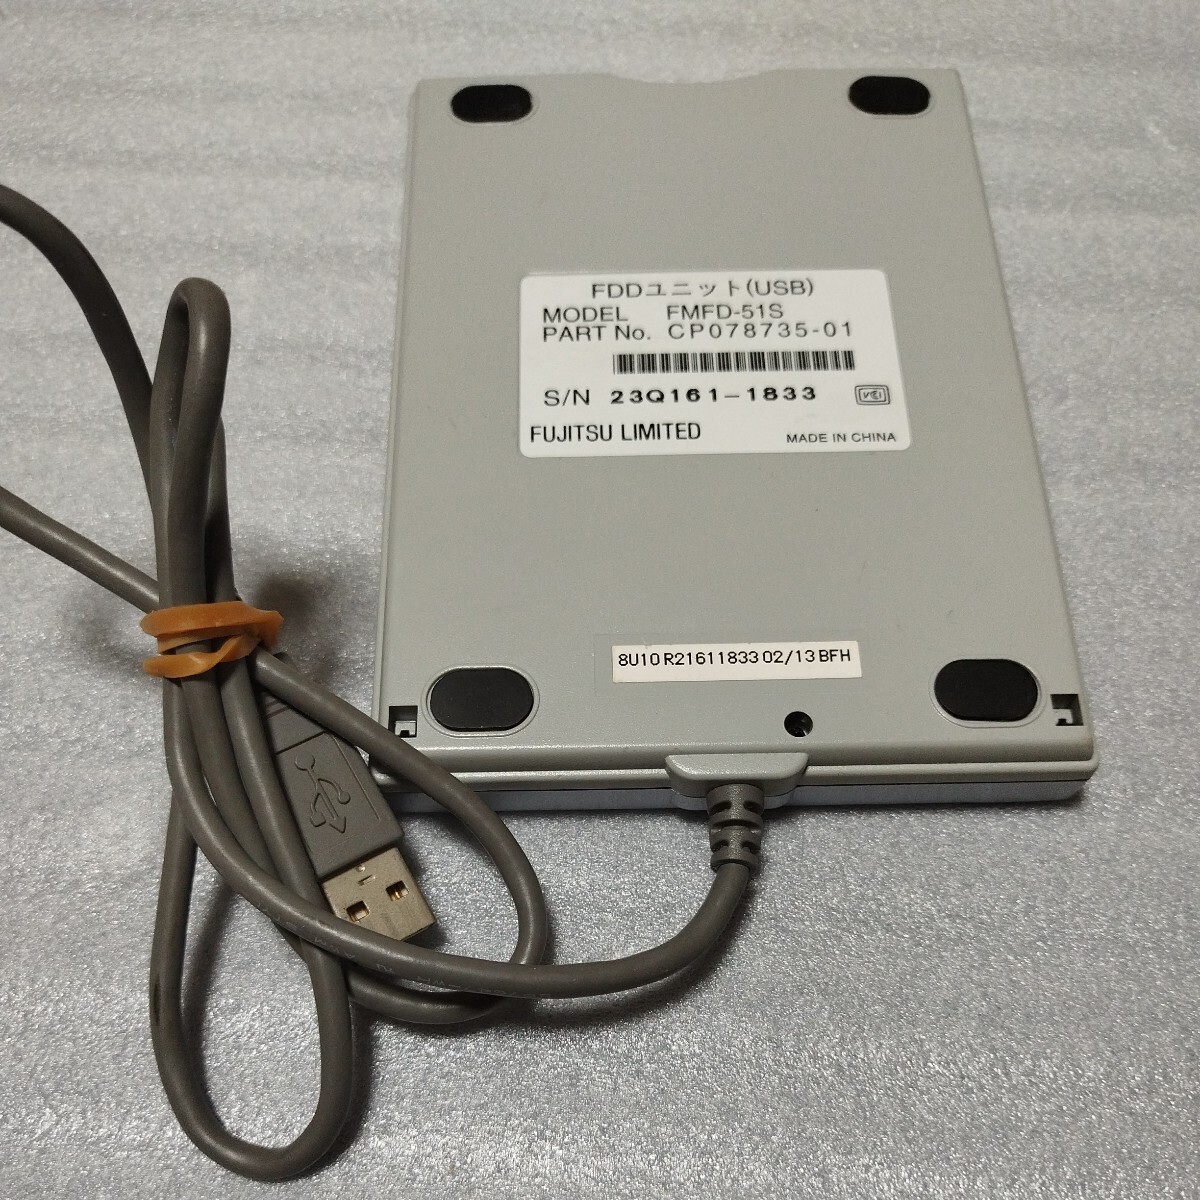 [ электризация проверка ] установленный снаружи USB флоппи-дисковод FDD Fujitsu FUJITSU FMFD-51S